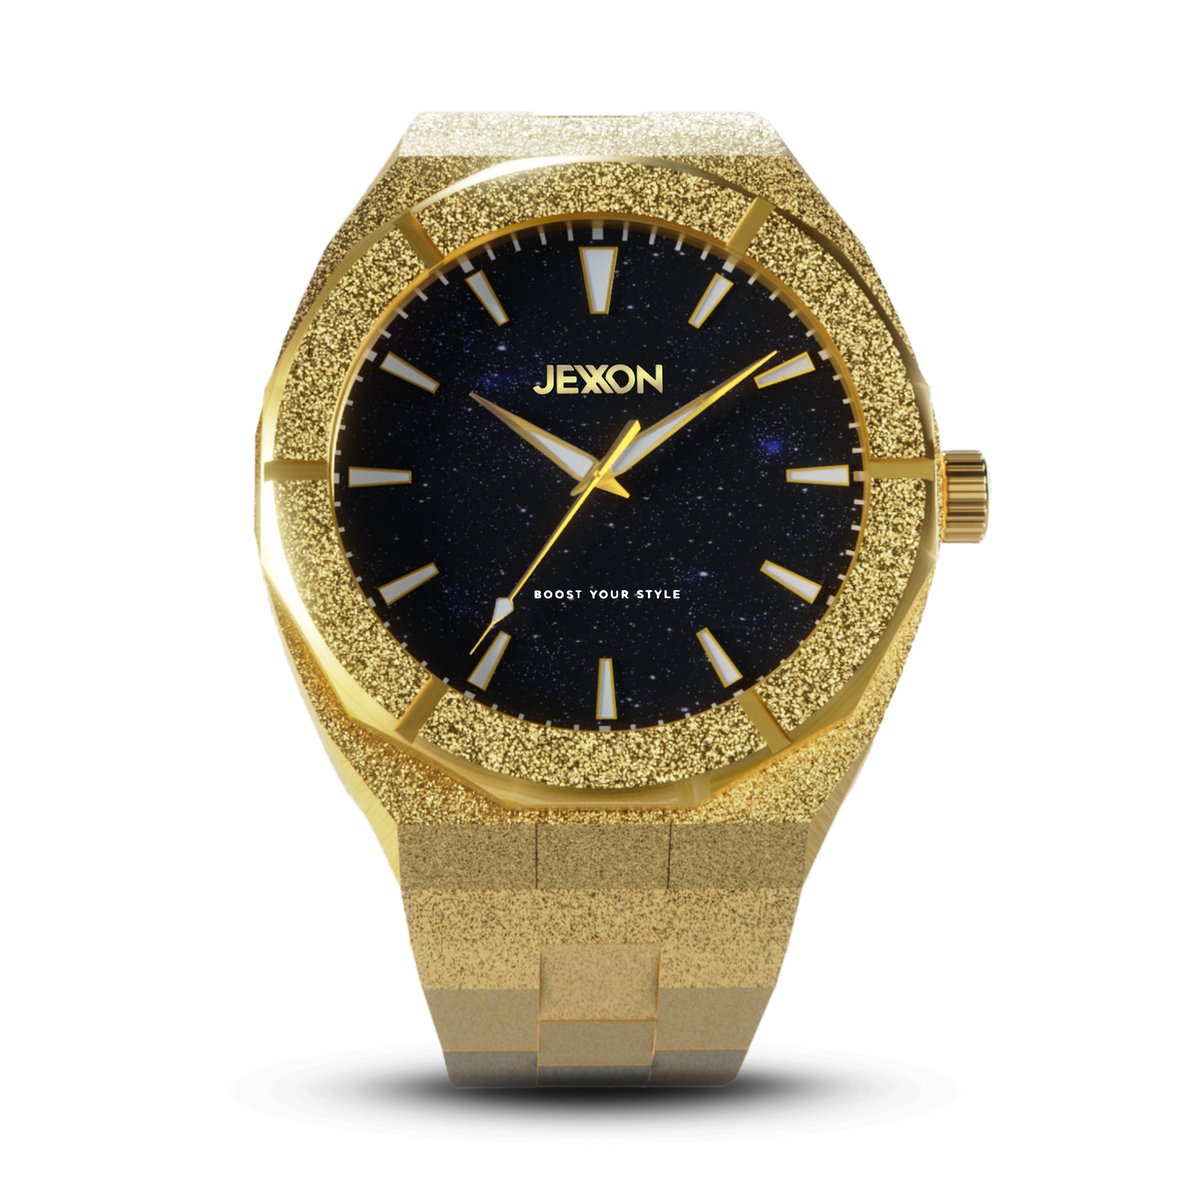 Gouden Heren Horloge - Jexxon® - Klassiek Ontwerp - Unieke Wijzerplaat - Limited Edition